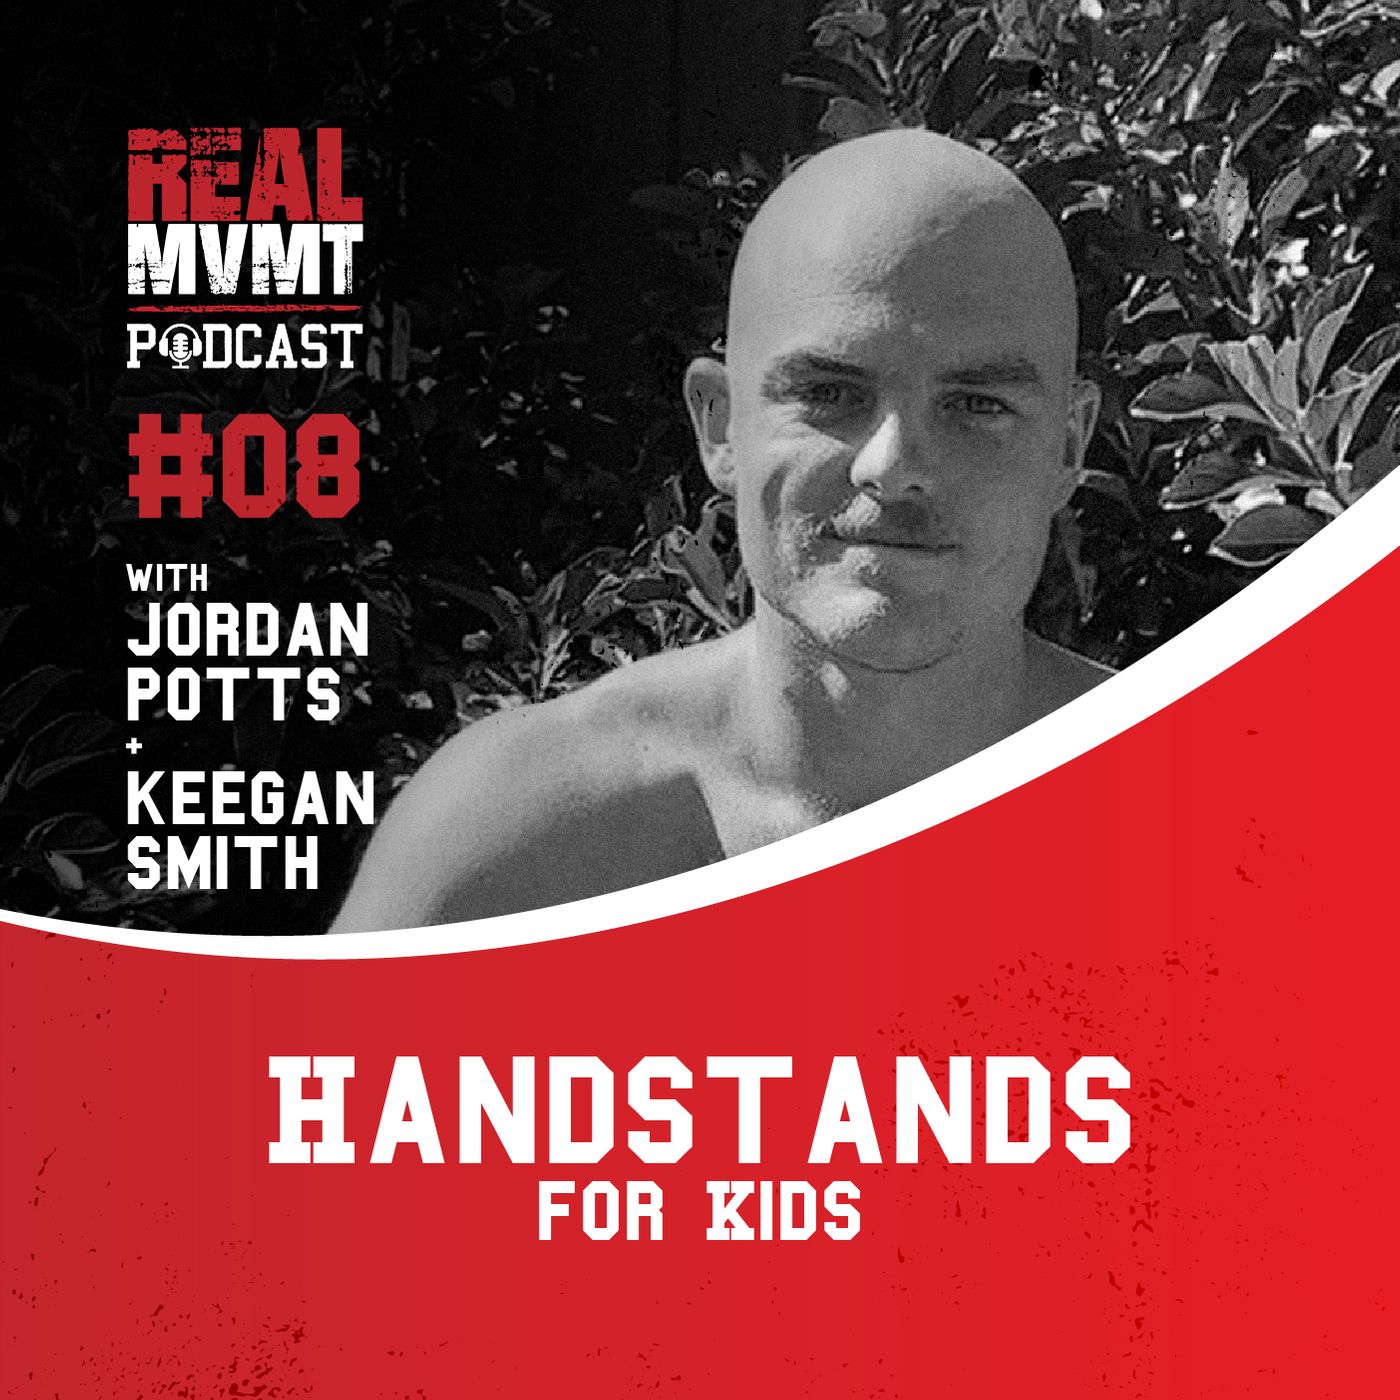 Handstands for Kids - Jordan Potts & Keegan Smith